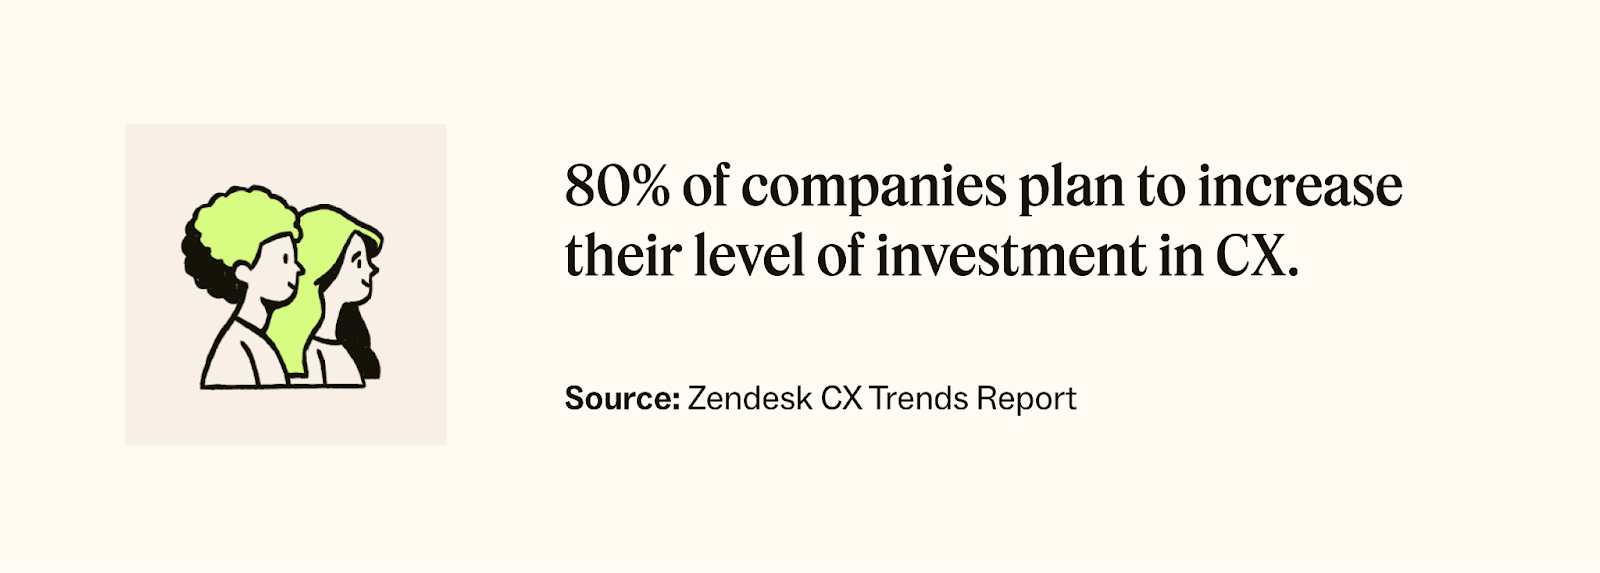 Zendesk CX Trends Report